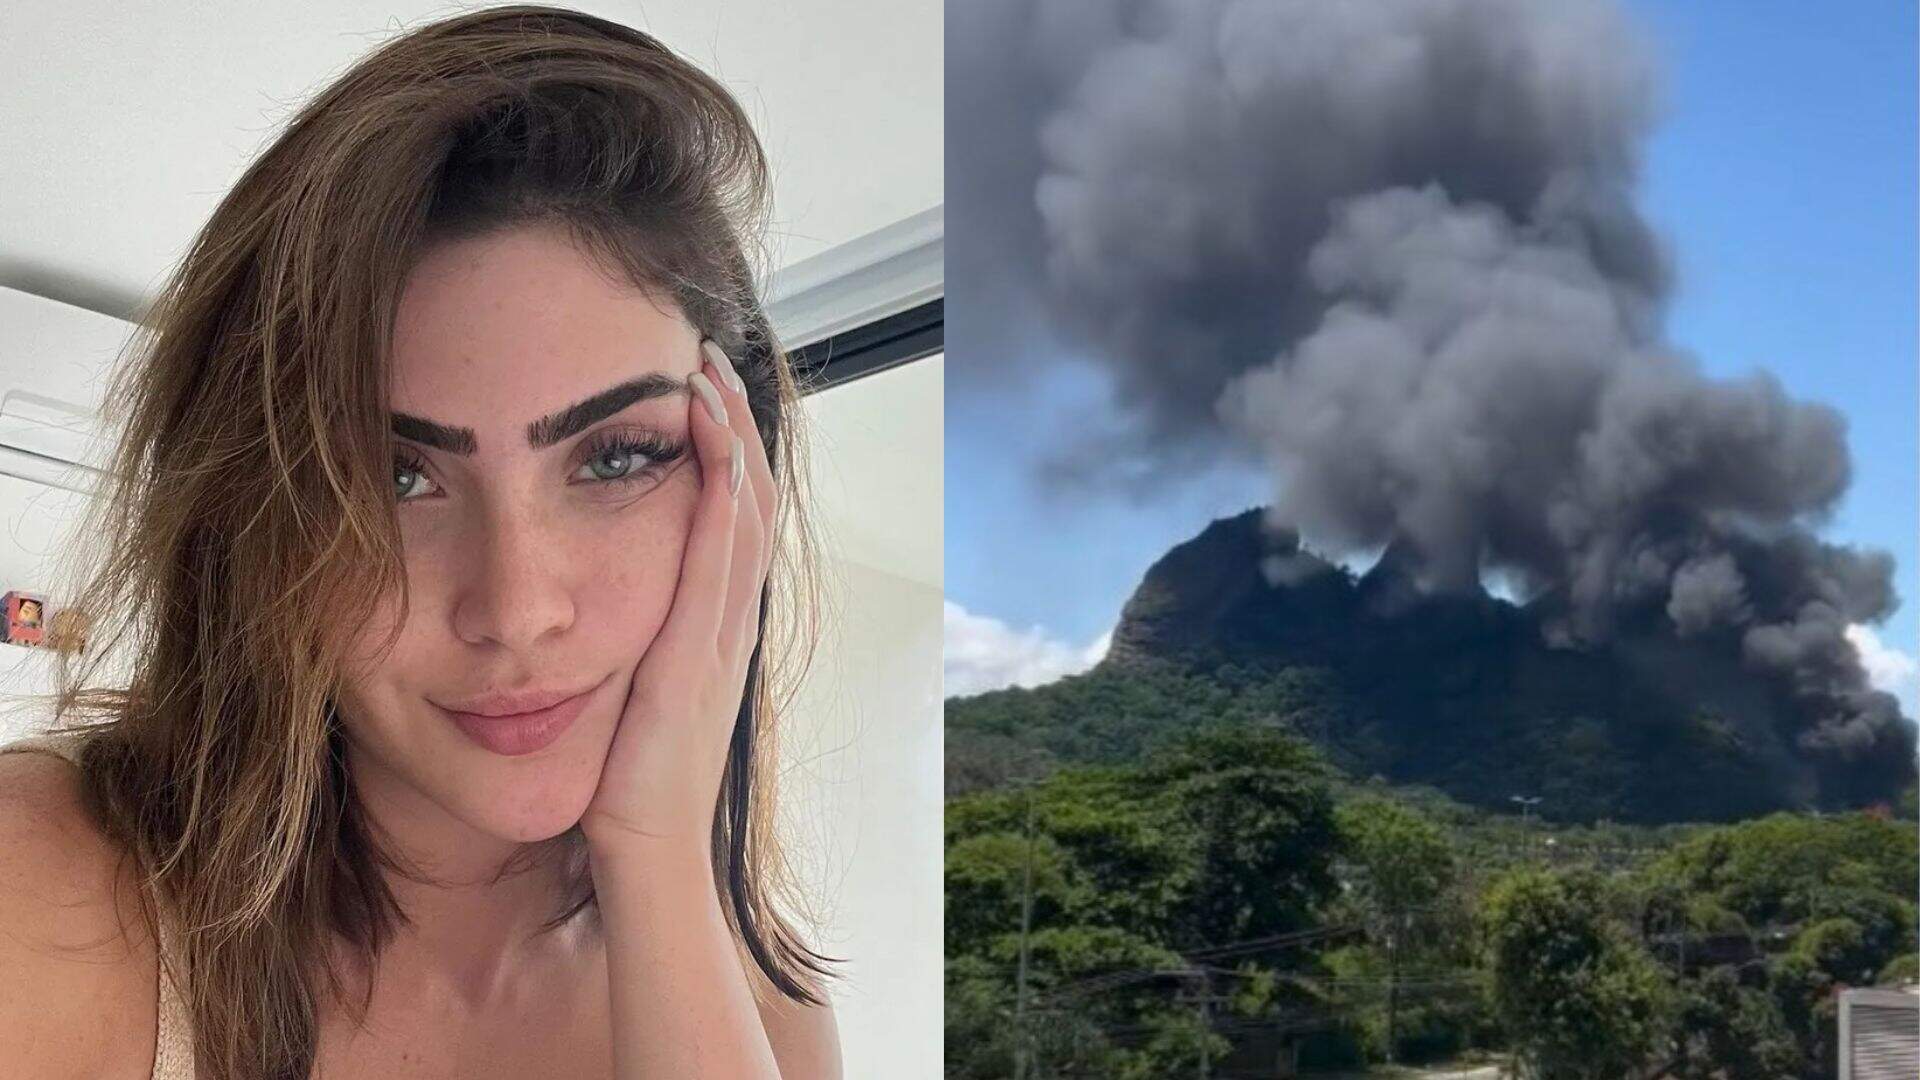 Susto! Após incêndio preocupante na Rede Globo, Jade Picon se pronuncia e manda recado aos fãs - Metropolitana FM